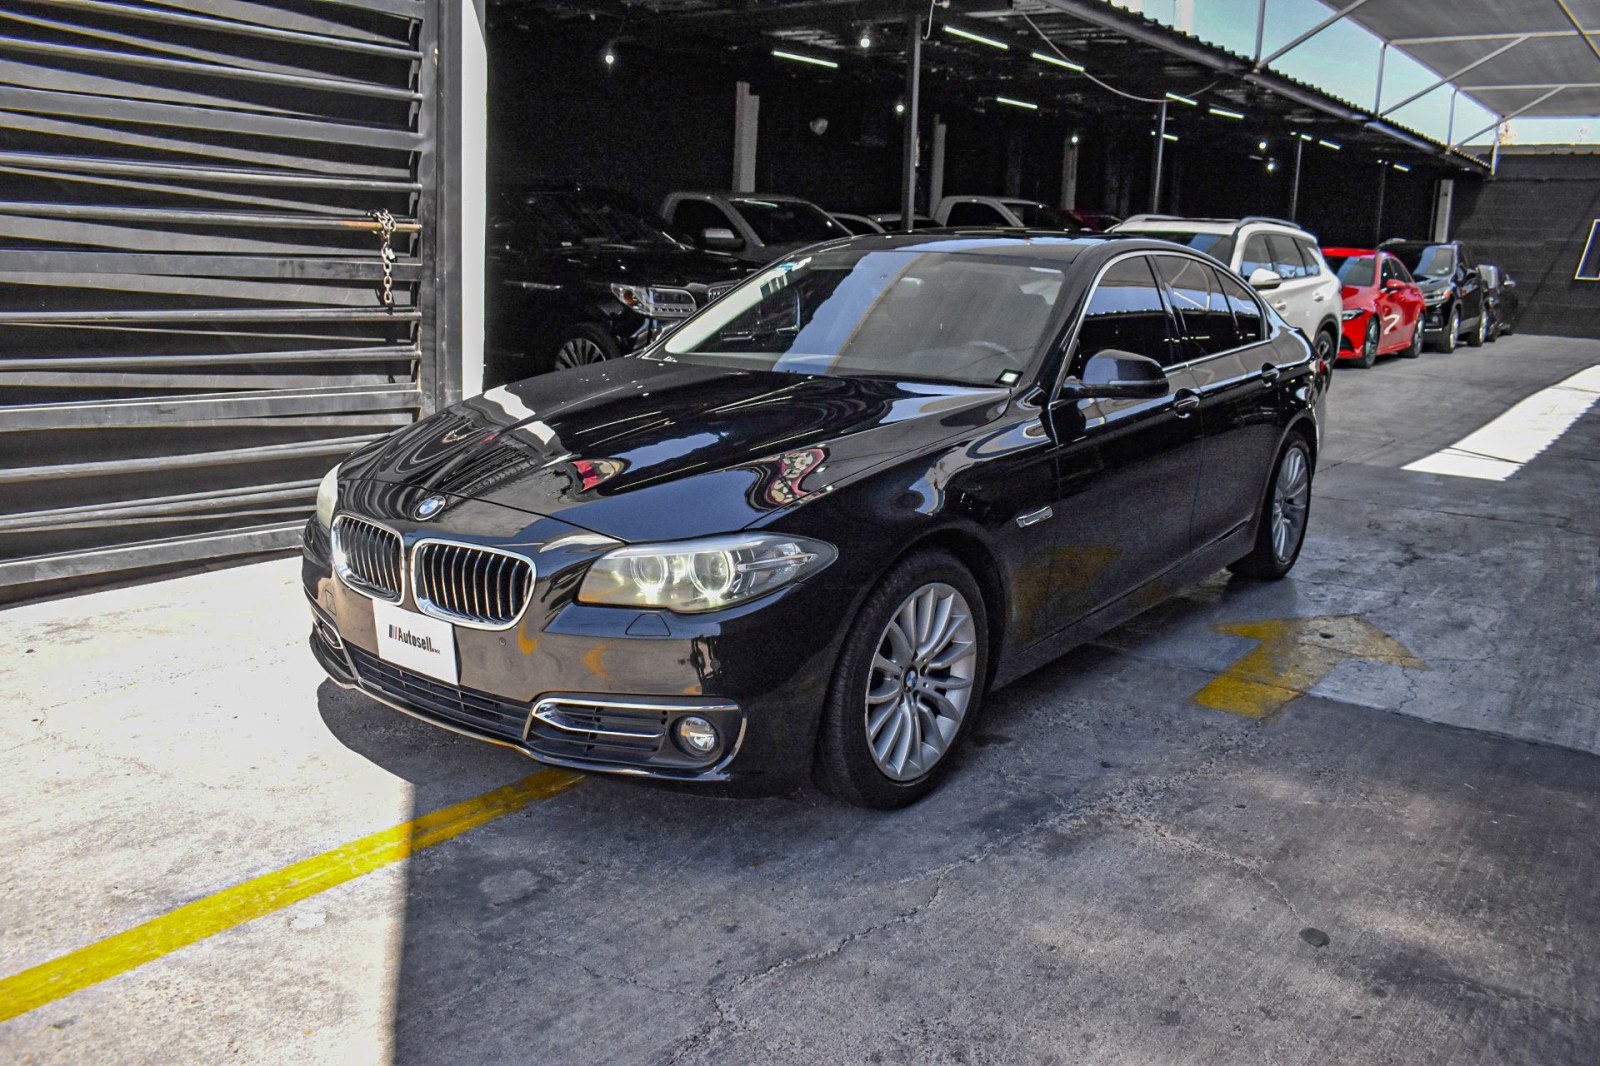 BMW 528i 2015